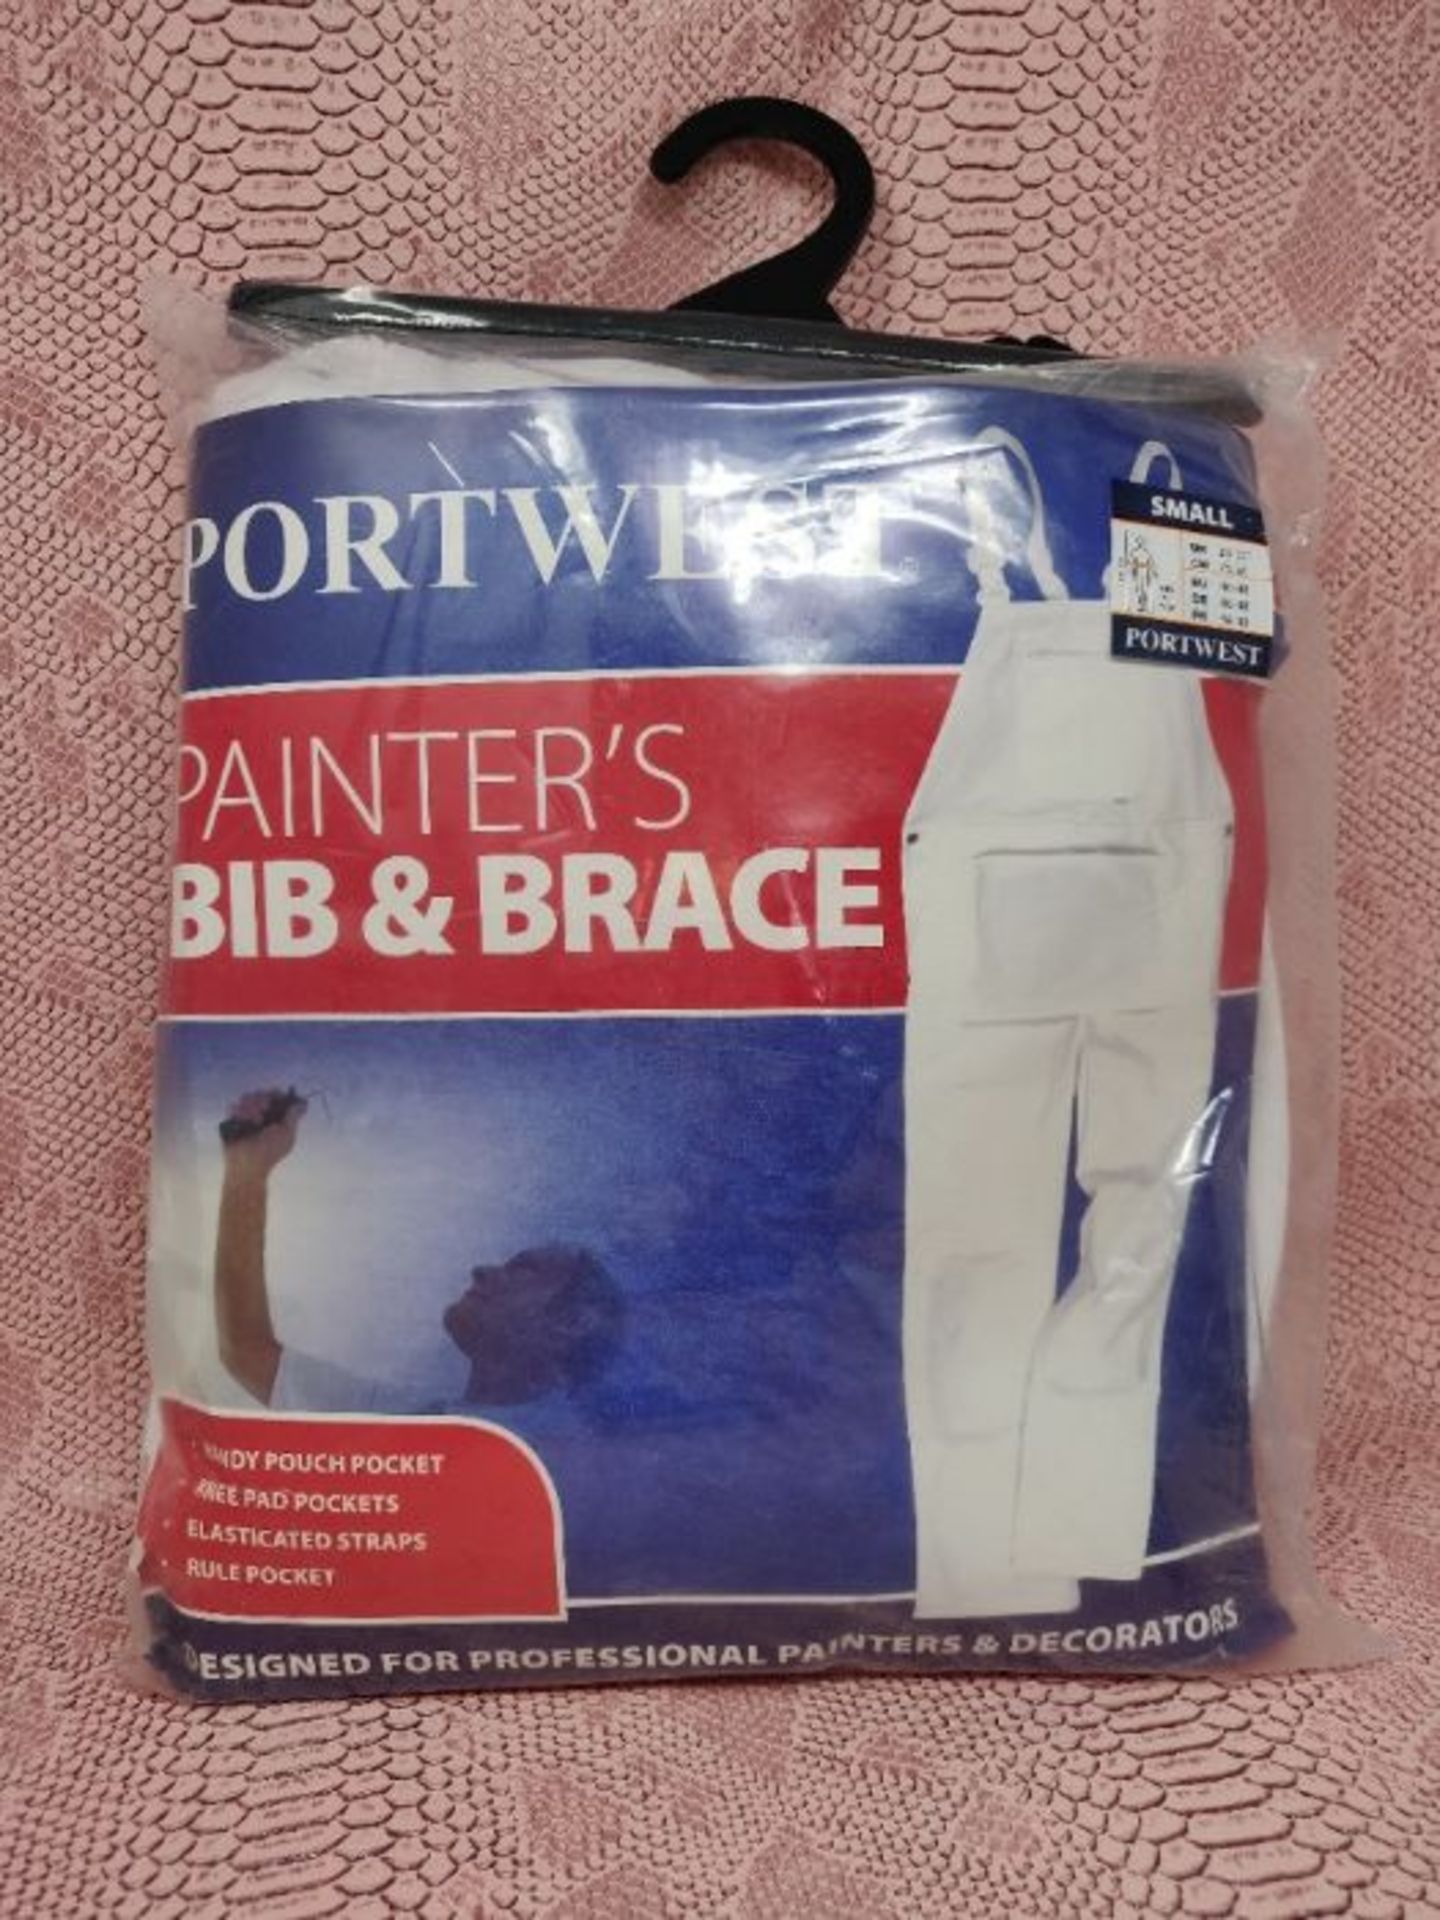 Portwest Bolton Painters Bib & Brace, Colour: White, Size: S, S810WHRS - Image 2 of 2